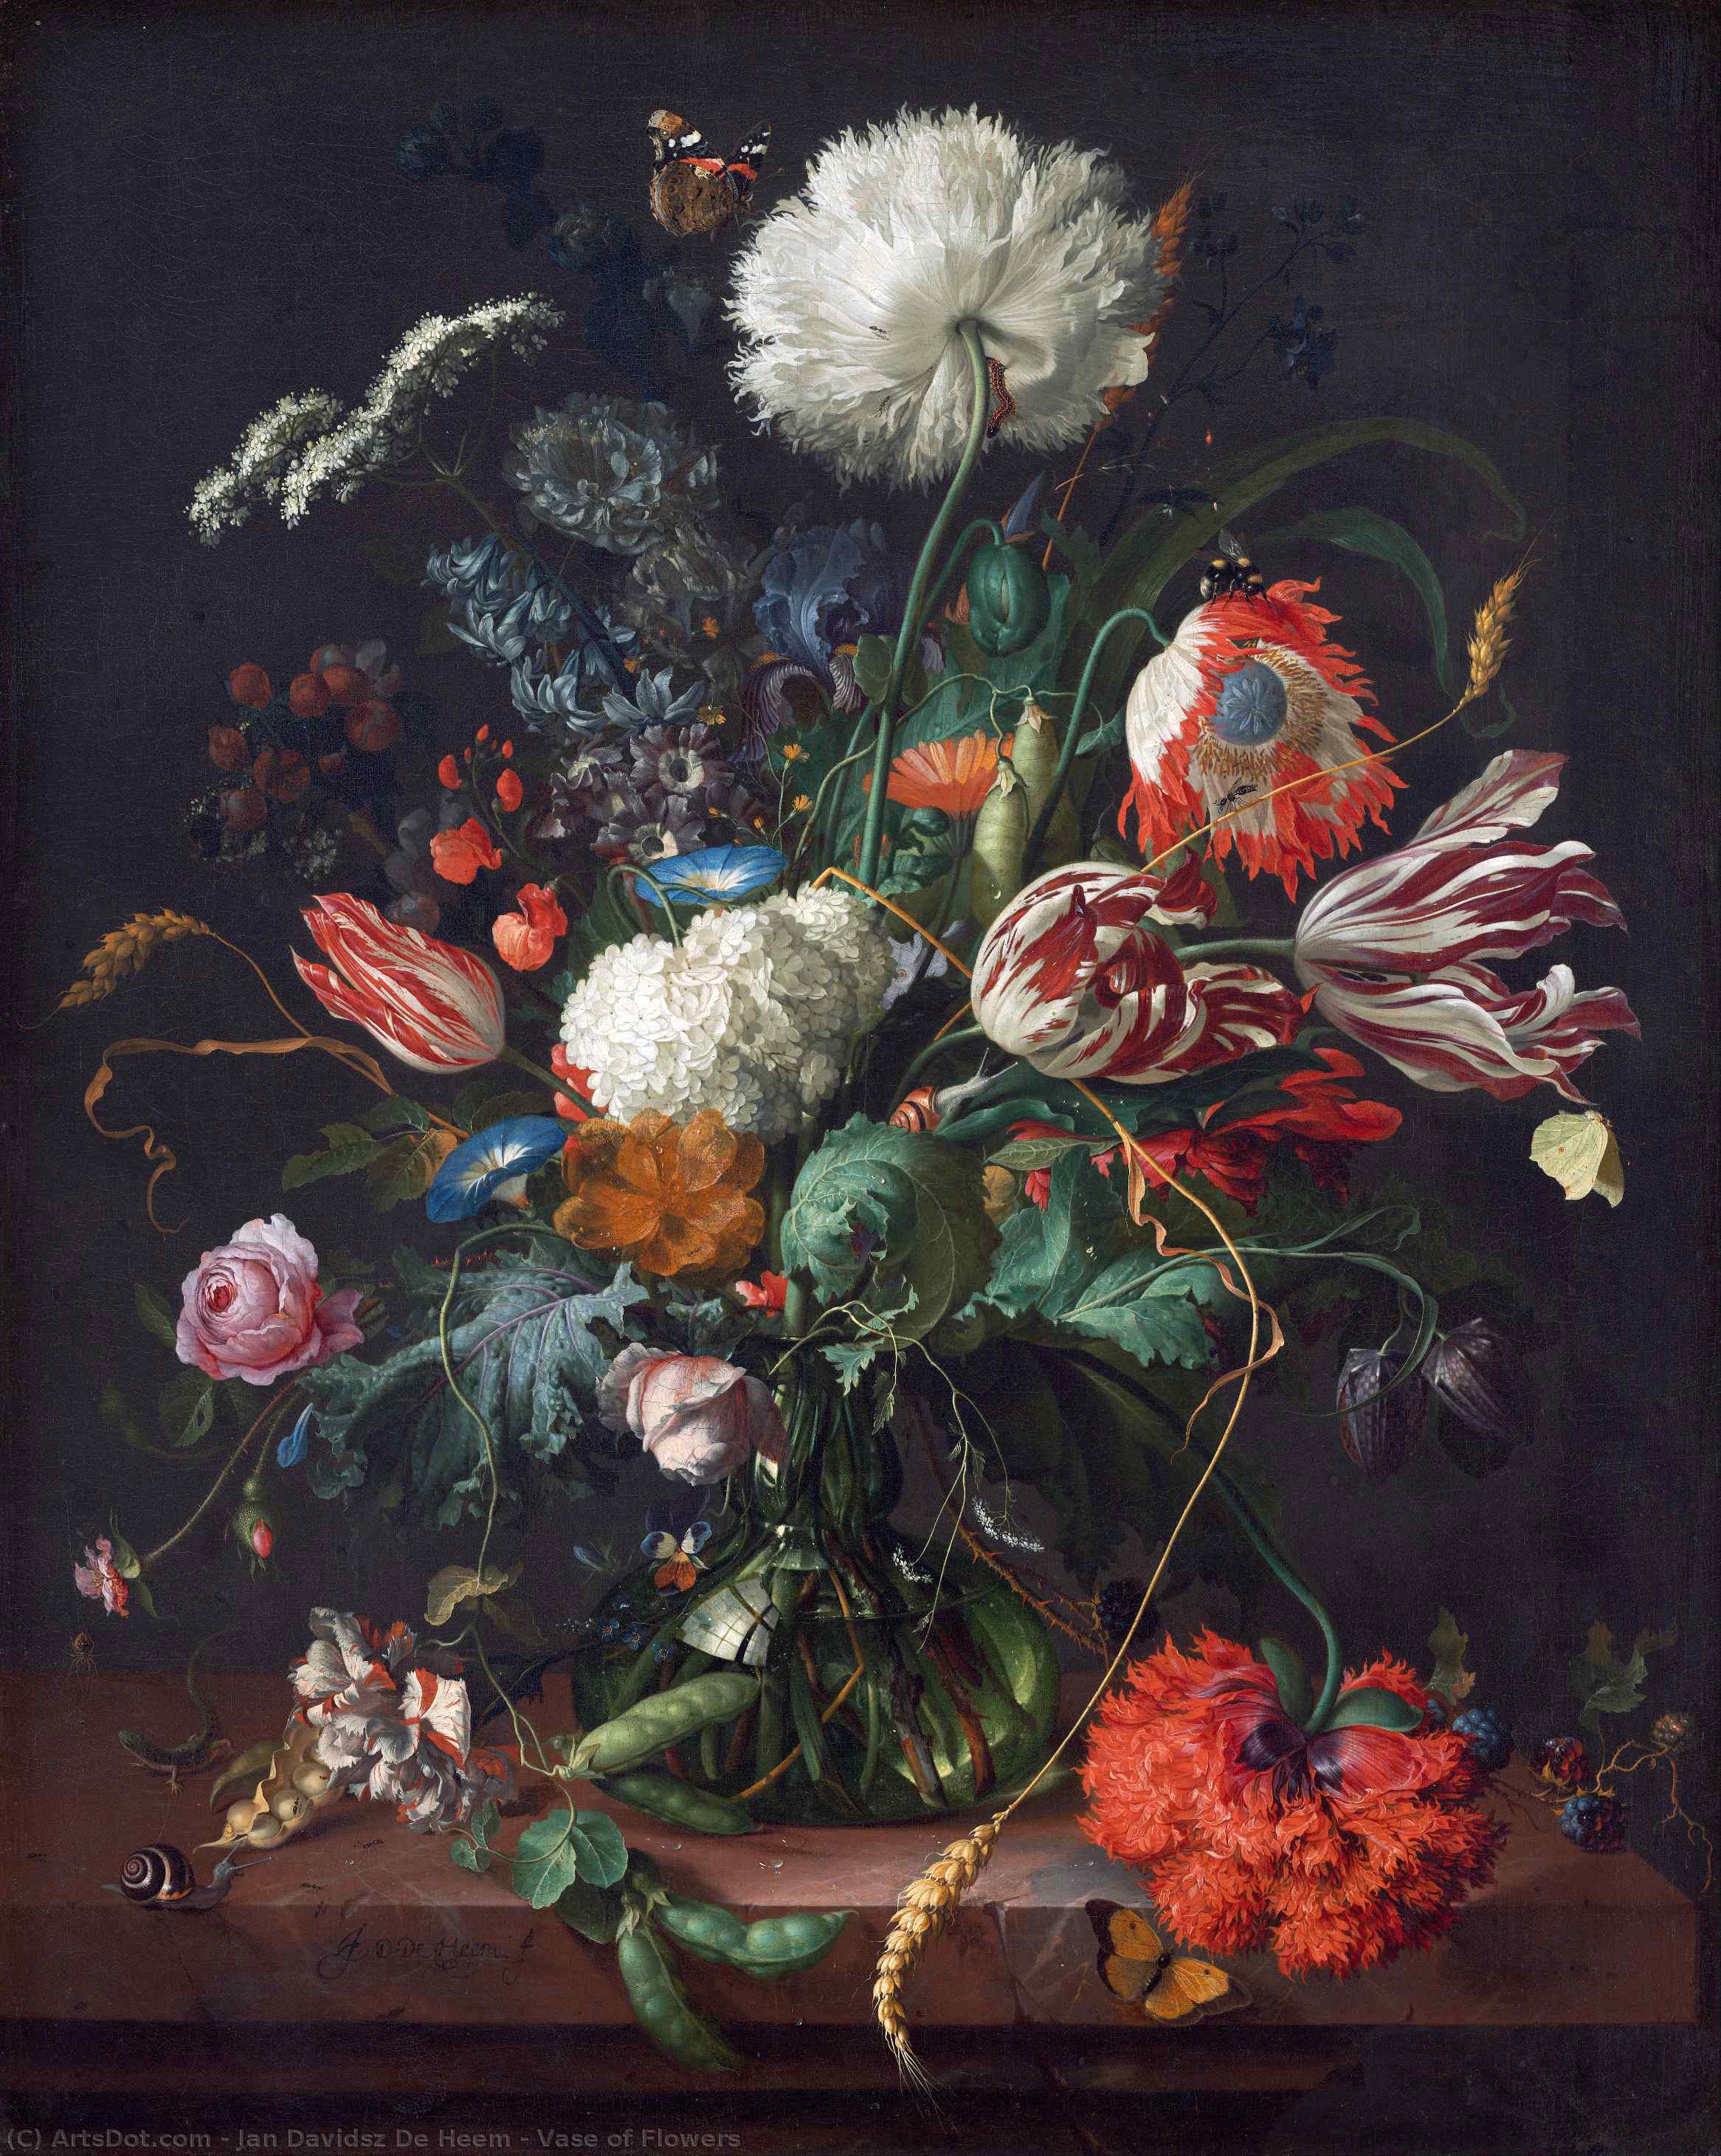 WikiOO.org - Encyclopedia of Fine Arts - Maleri, Artwork Jan Davidsz De Heem - Vase of Flowers